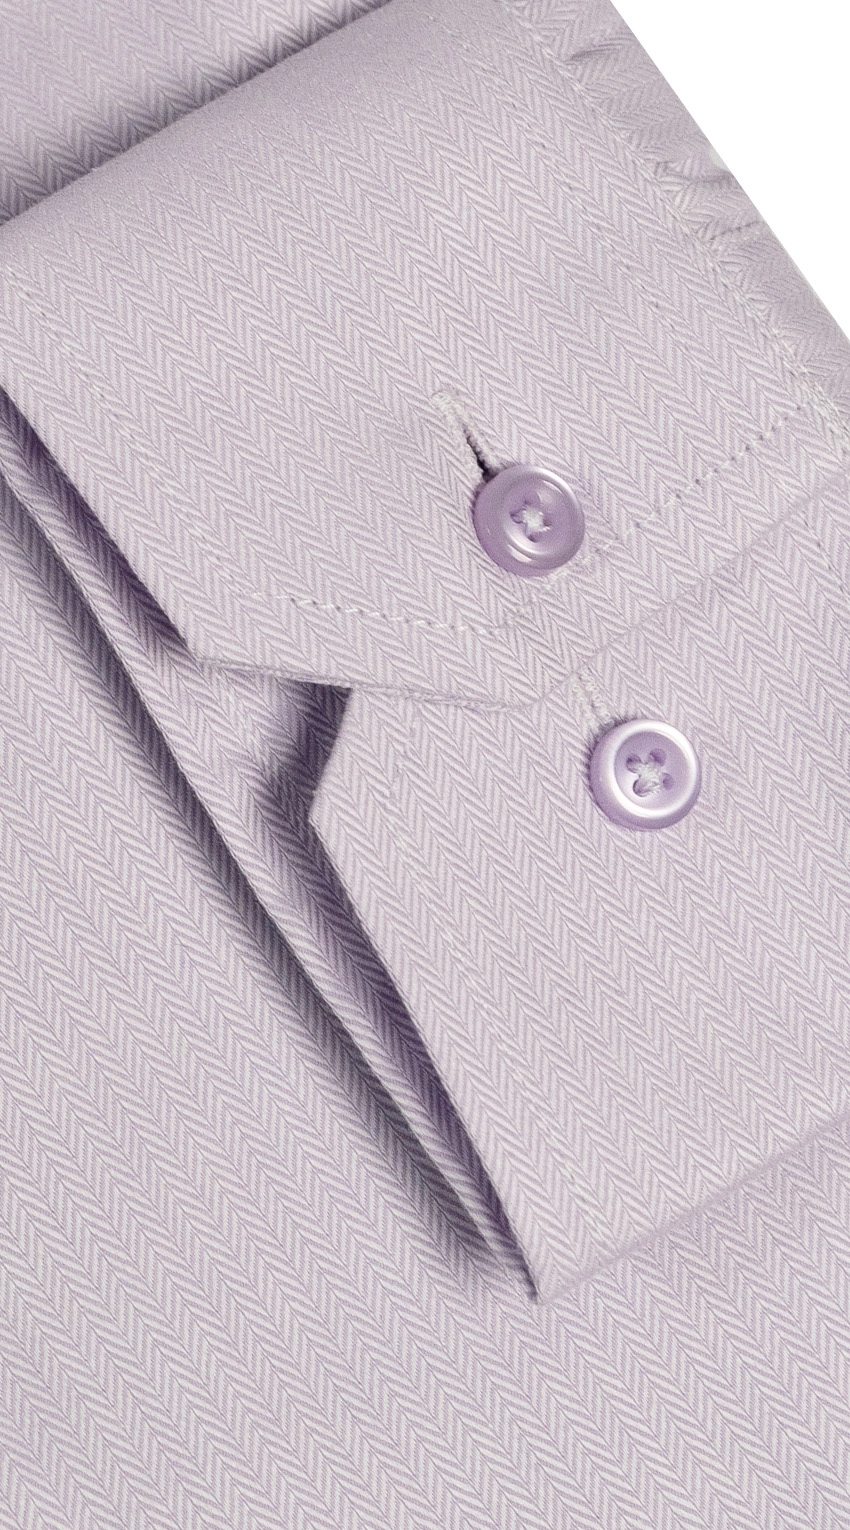 Herringbone Purple Dress Shirt